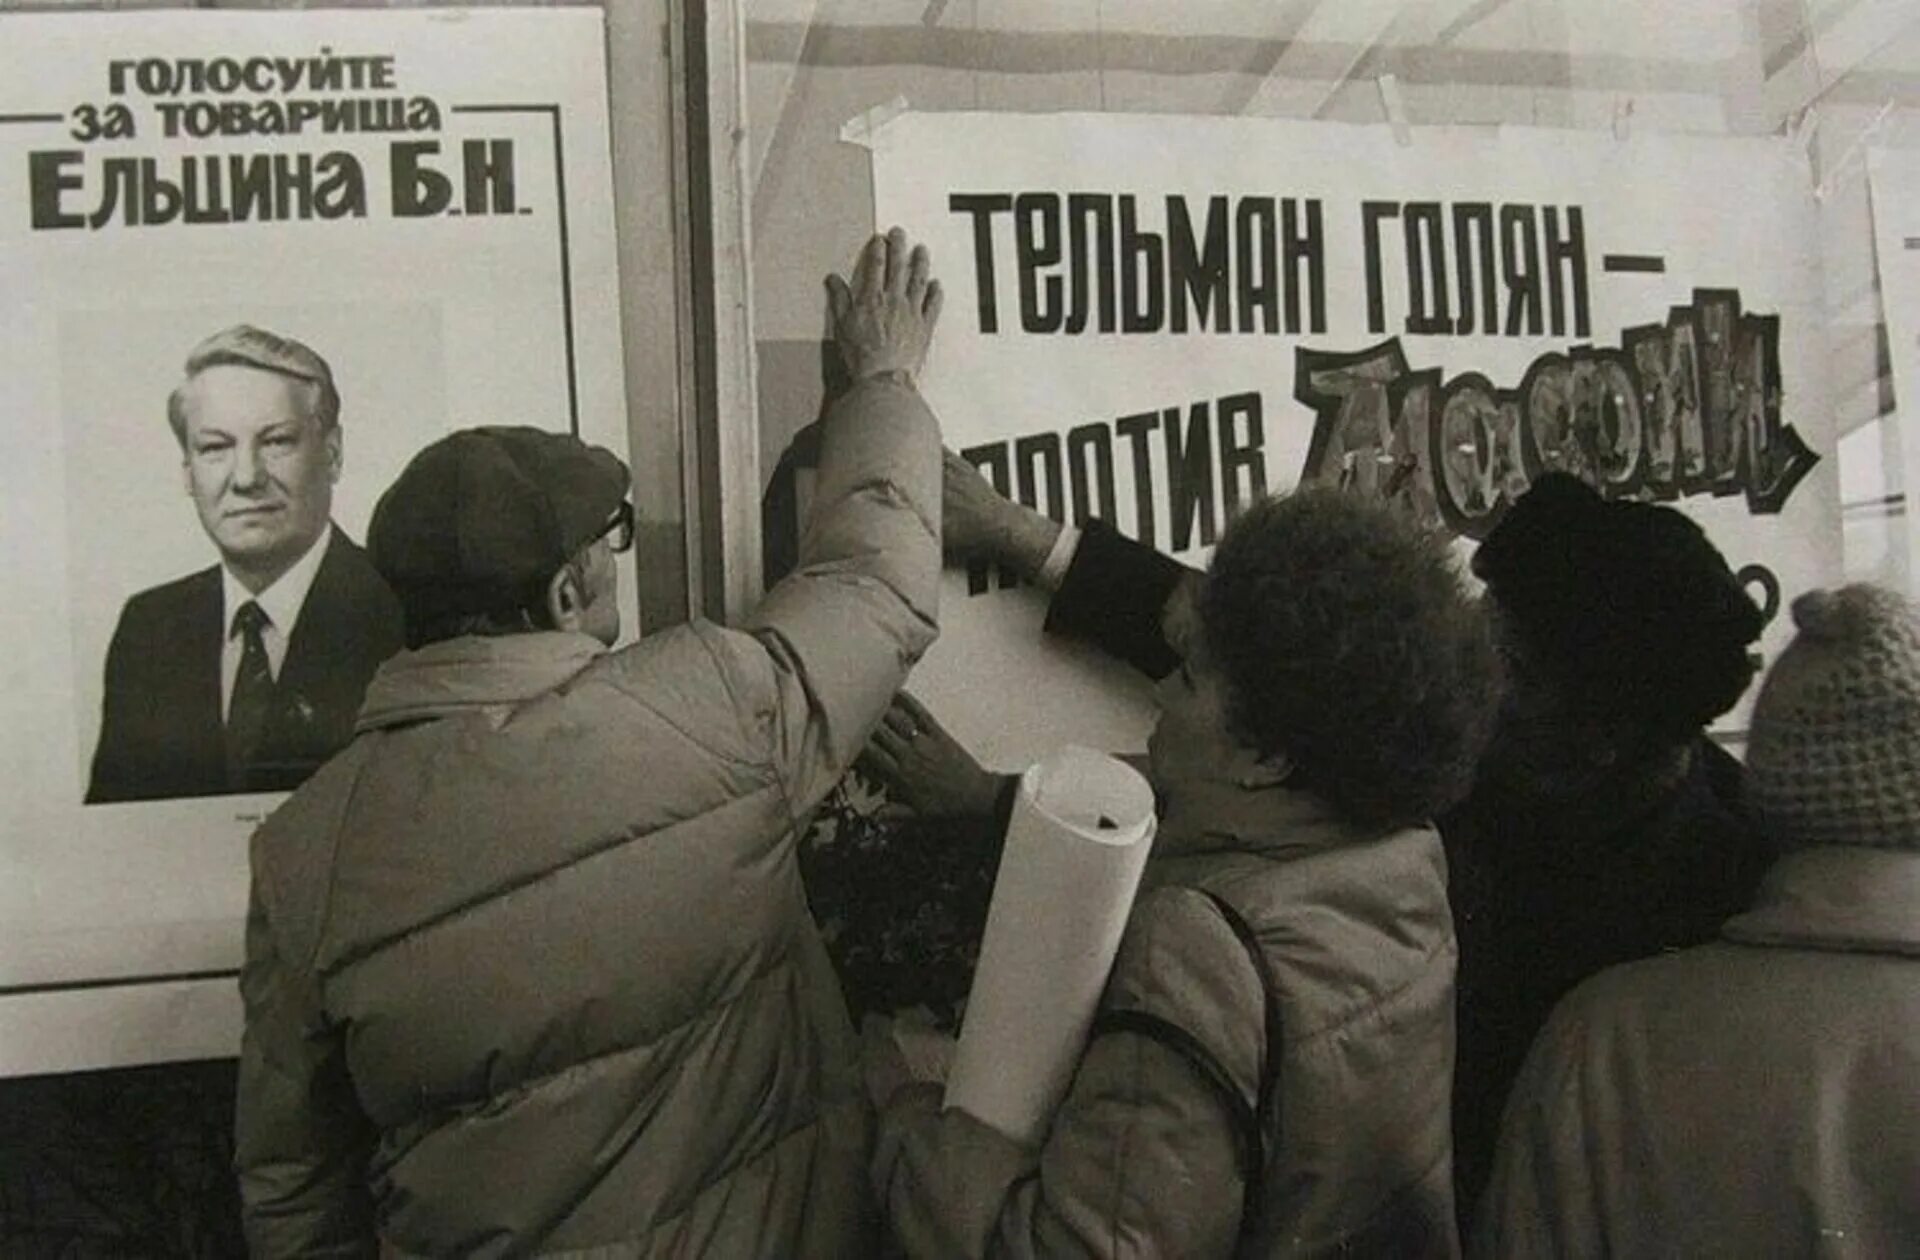 Ельцин выборы 1991. Ельцин митинг 1990. Митинги в России 1991 года за Ельцина. Ельцин в 90-е годы. Первые альтернативные выборы